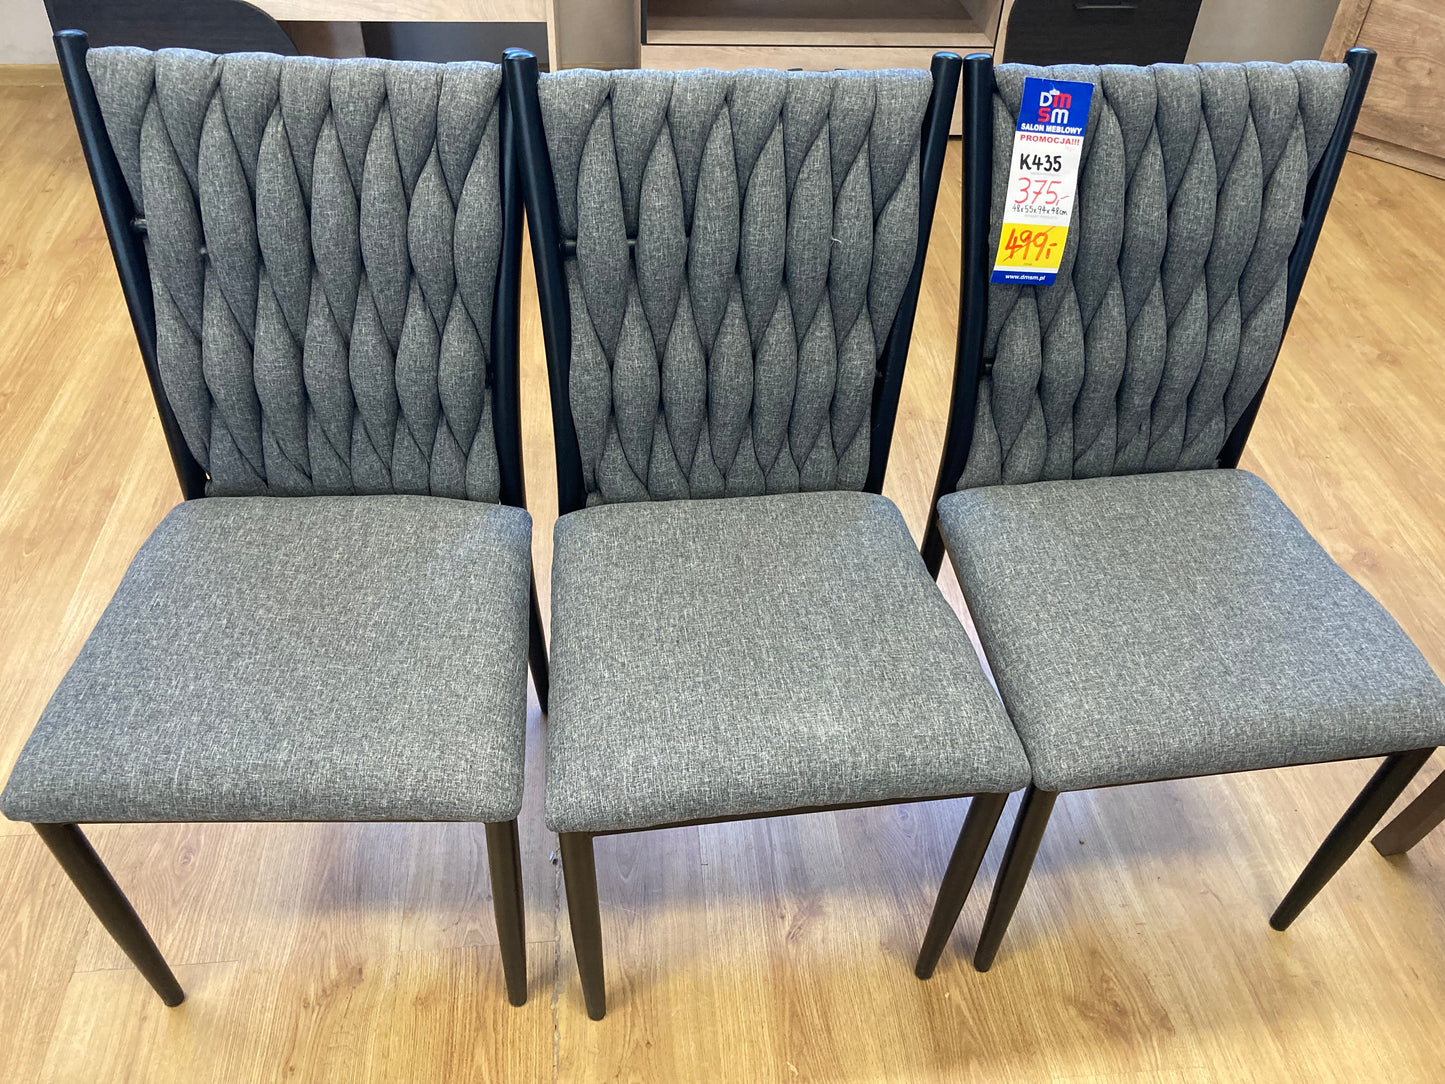 Zbliżenie na tkaninę, z której są wykonane krzesła wyprzedażowe K435. Ozdobne przeszycia oparć to niesamowity efekt wizualny.